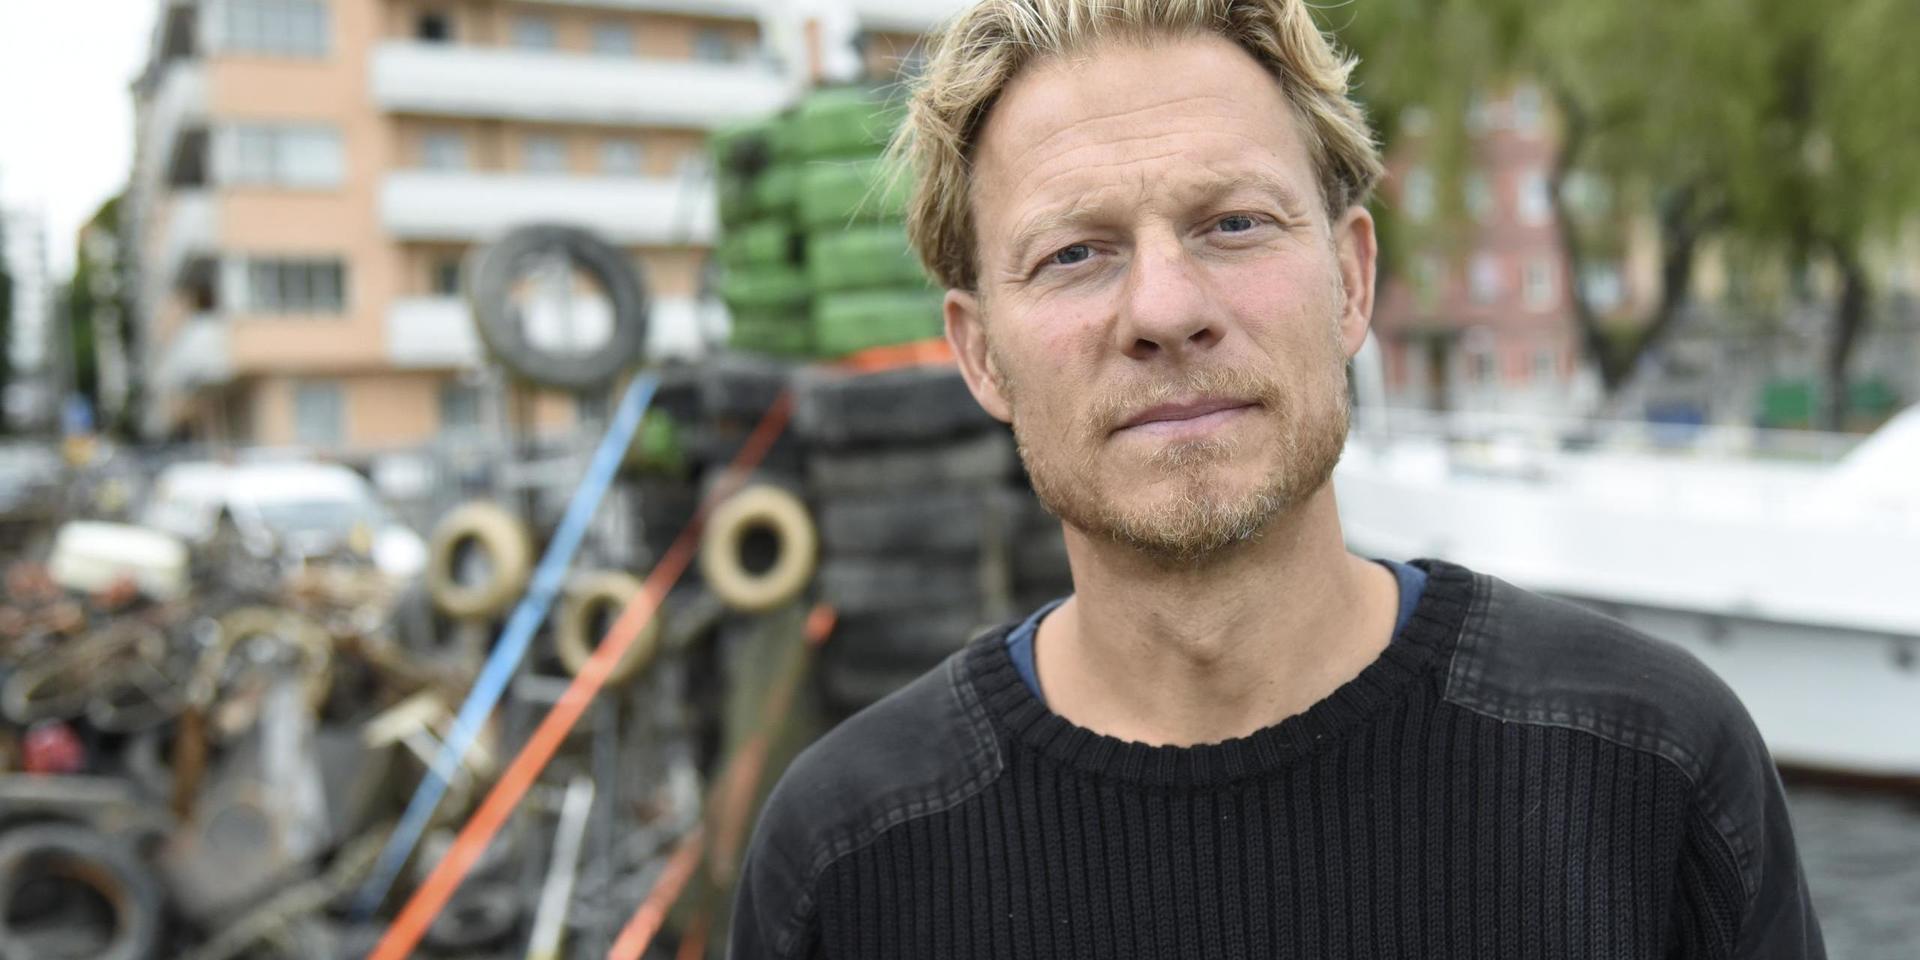 Fredrik Johansson, initiativtagare till projektet Rena Mälaren, som bygger en installation av Stockholms stadshus av sopor som man hittat i Riddarfjärden.